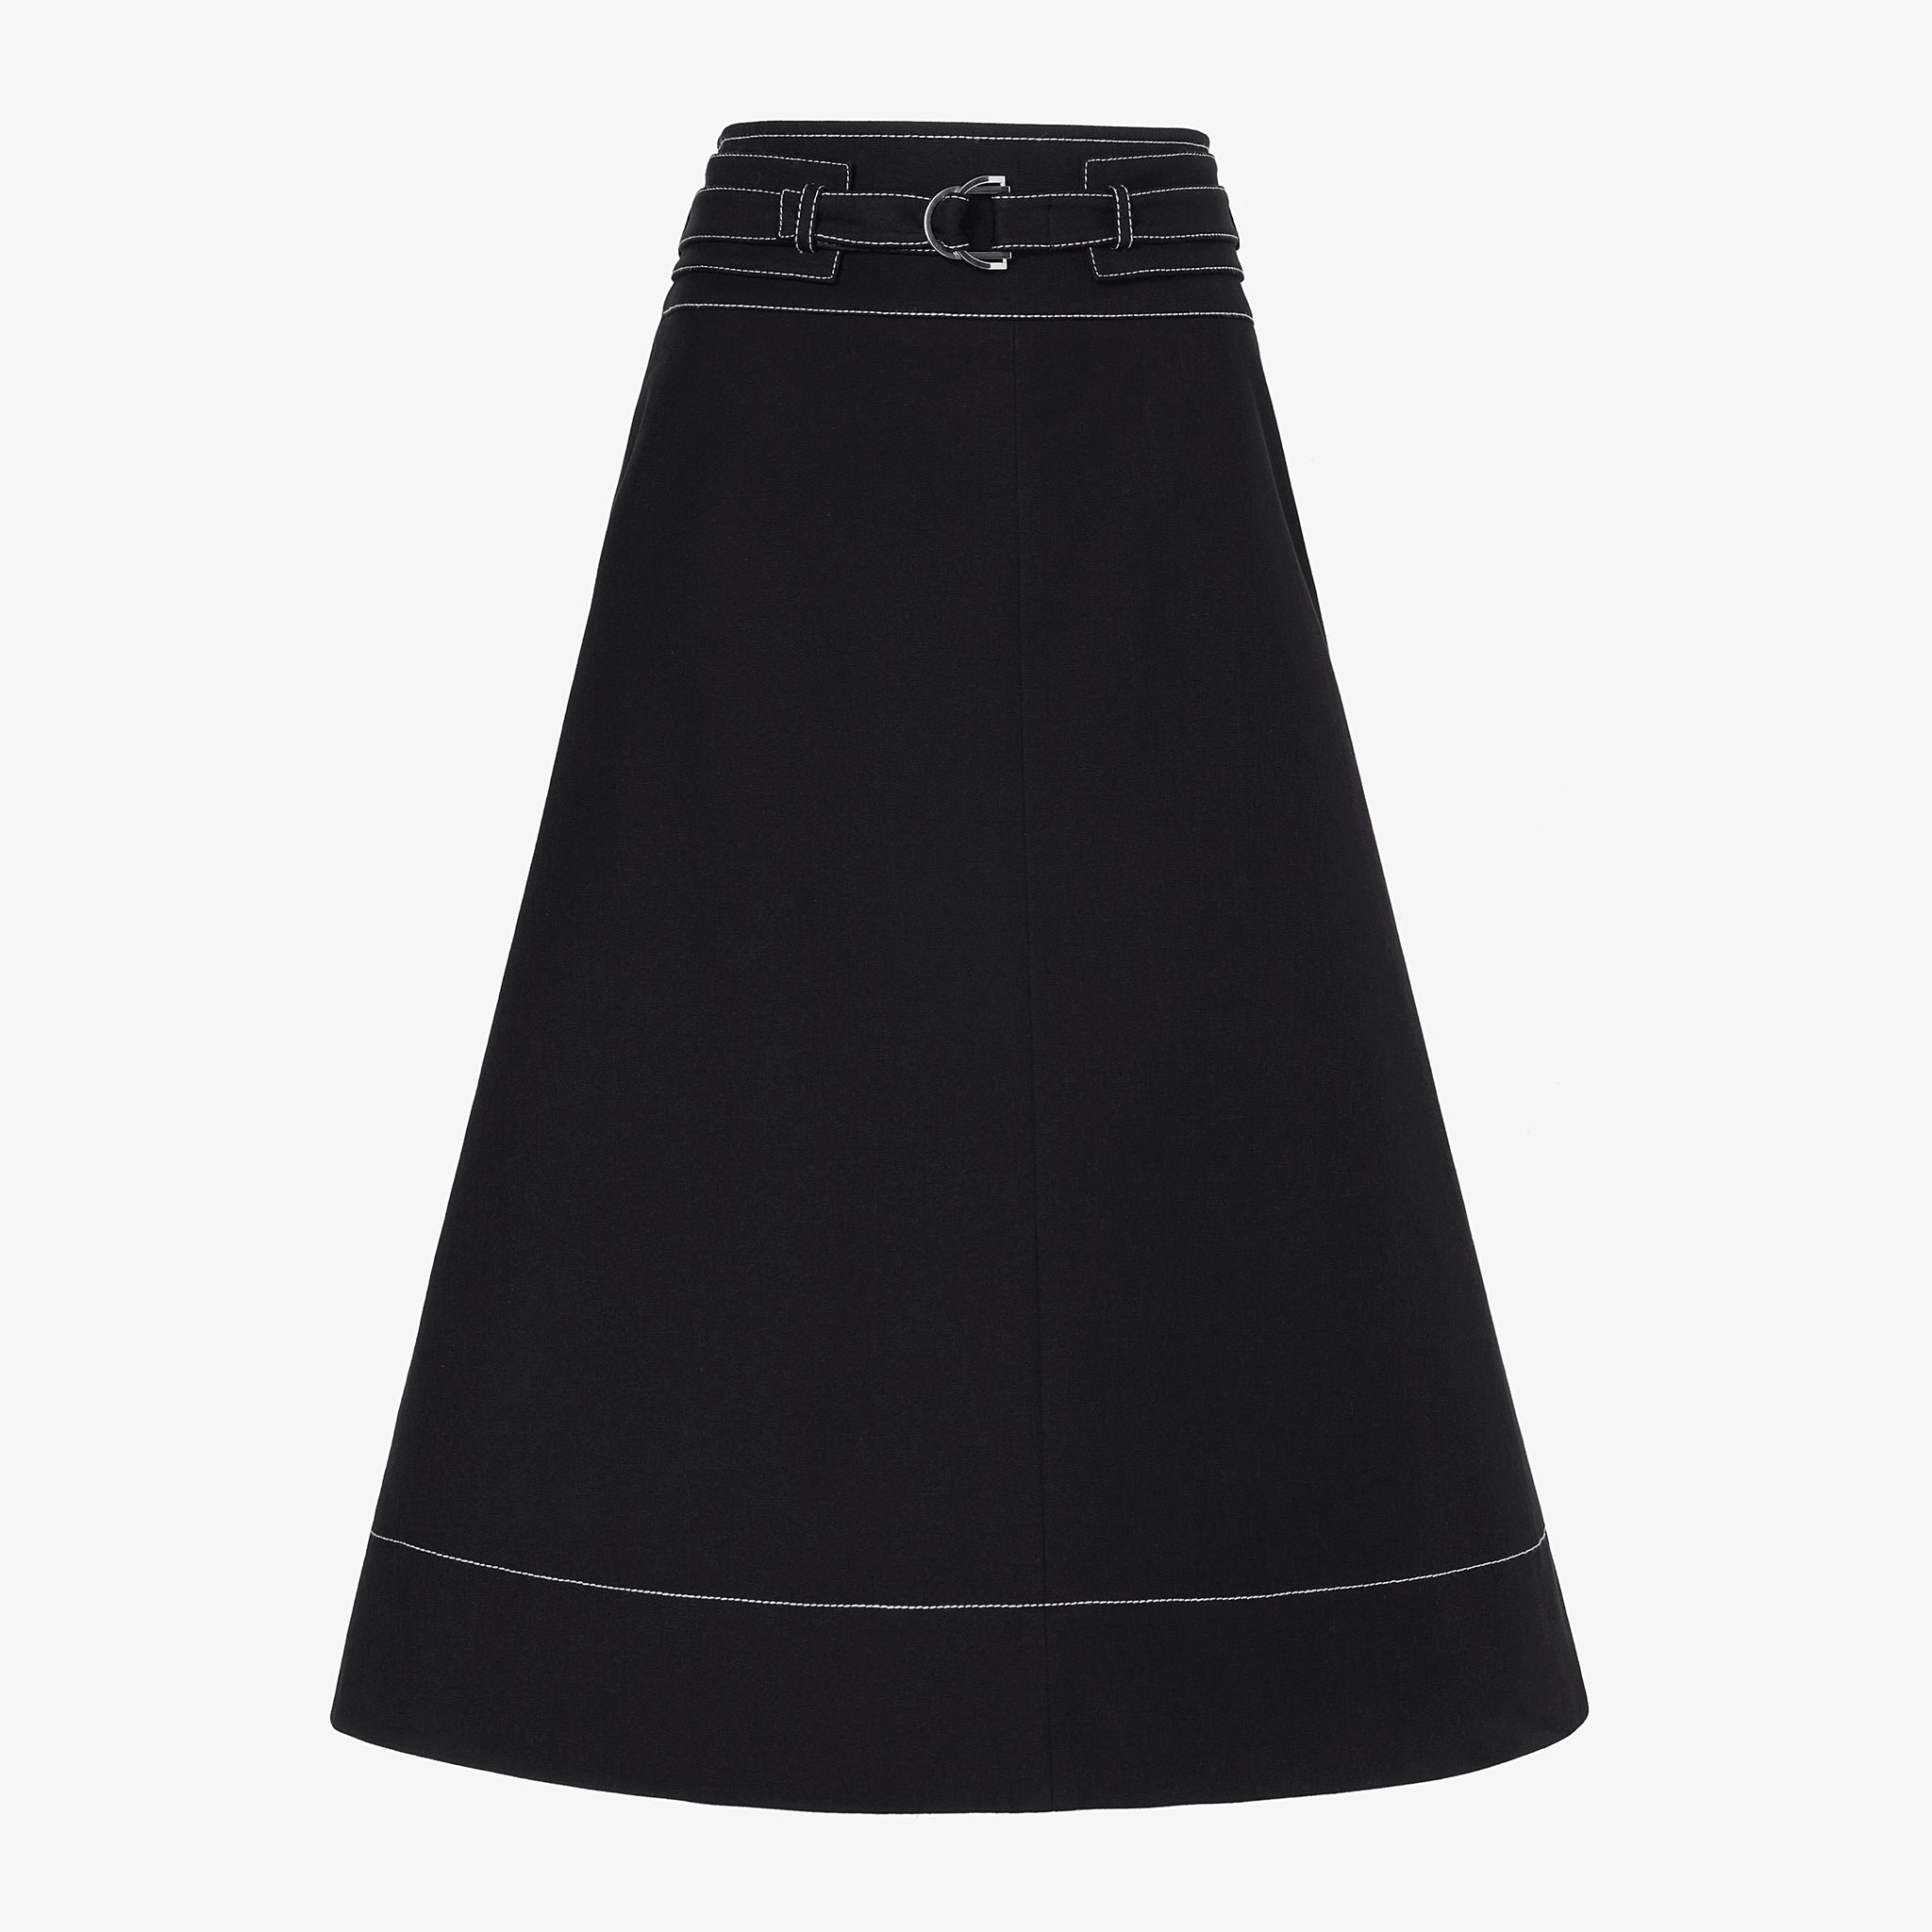 packshot image of the bodhi skirt in black